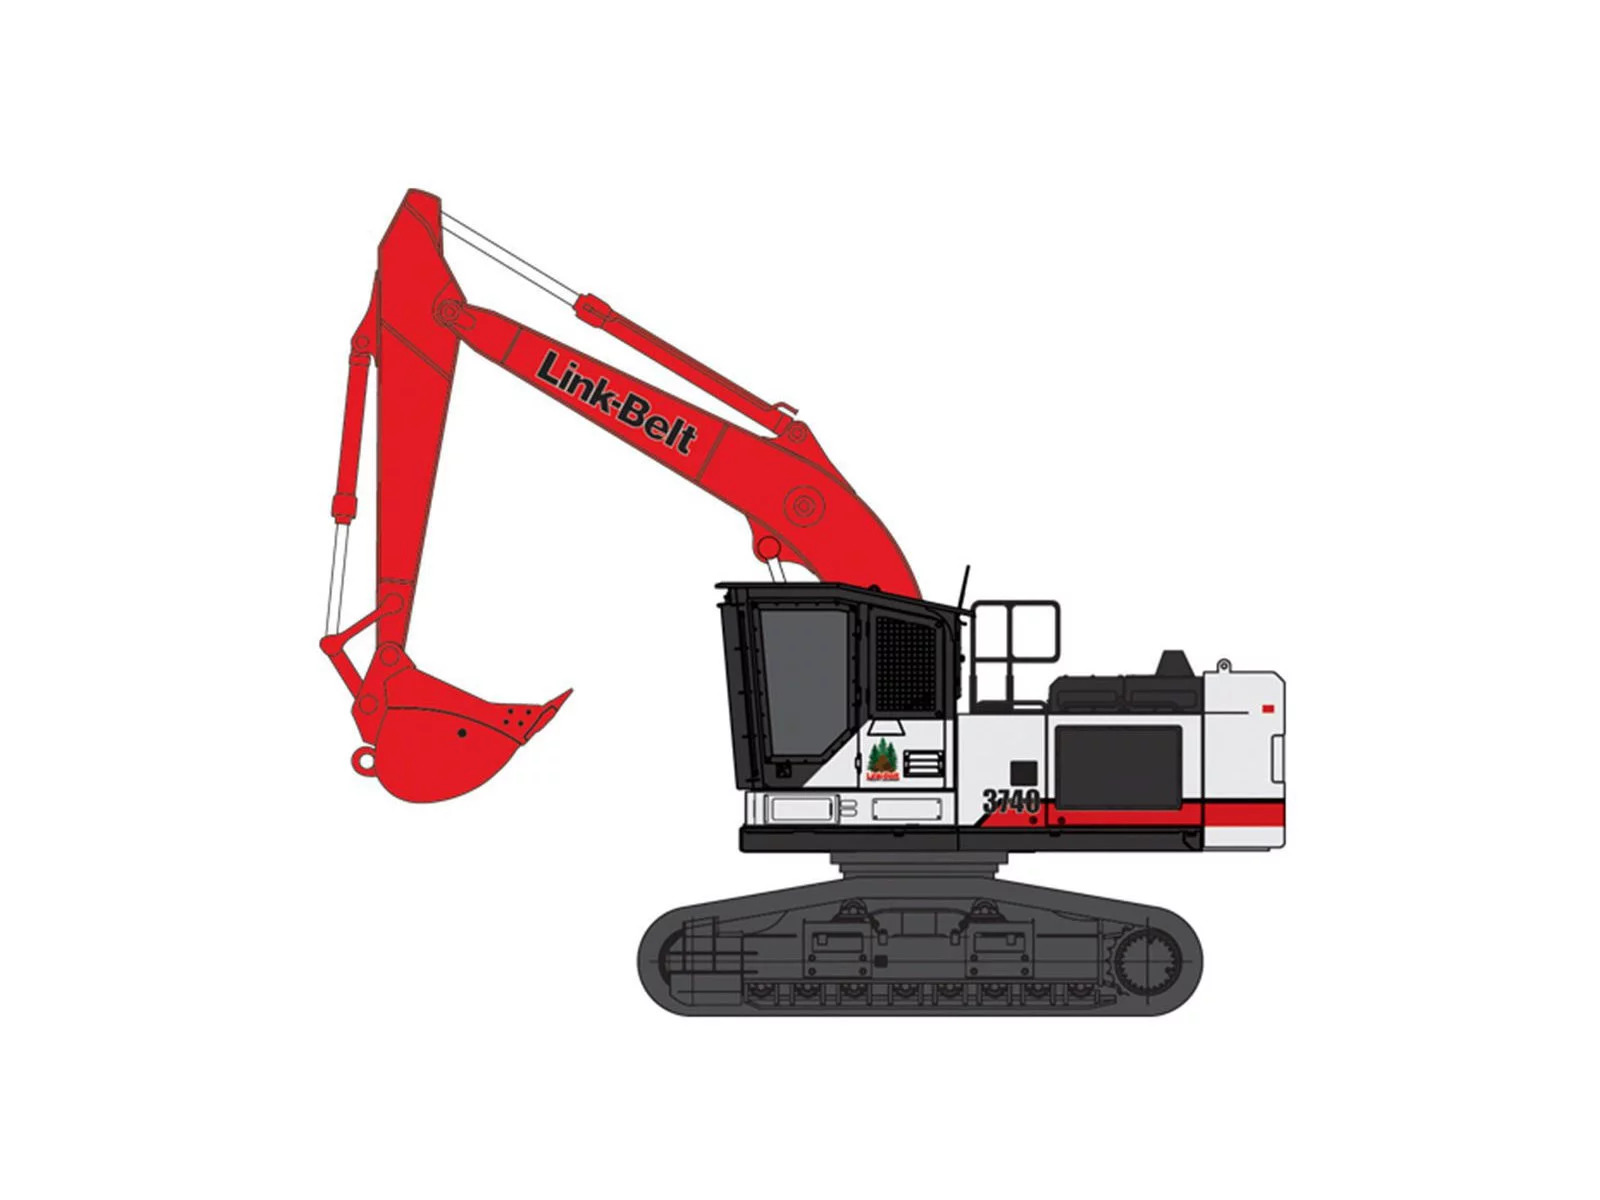 Link-Belt excavator 3740 RB | Product Link-Belt excavator 3740 RB